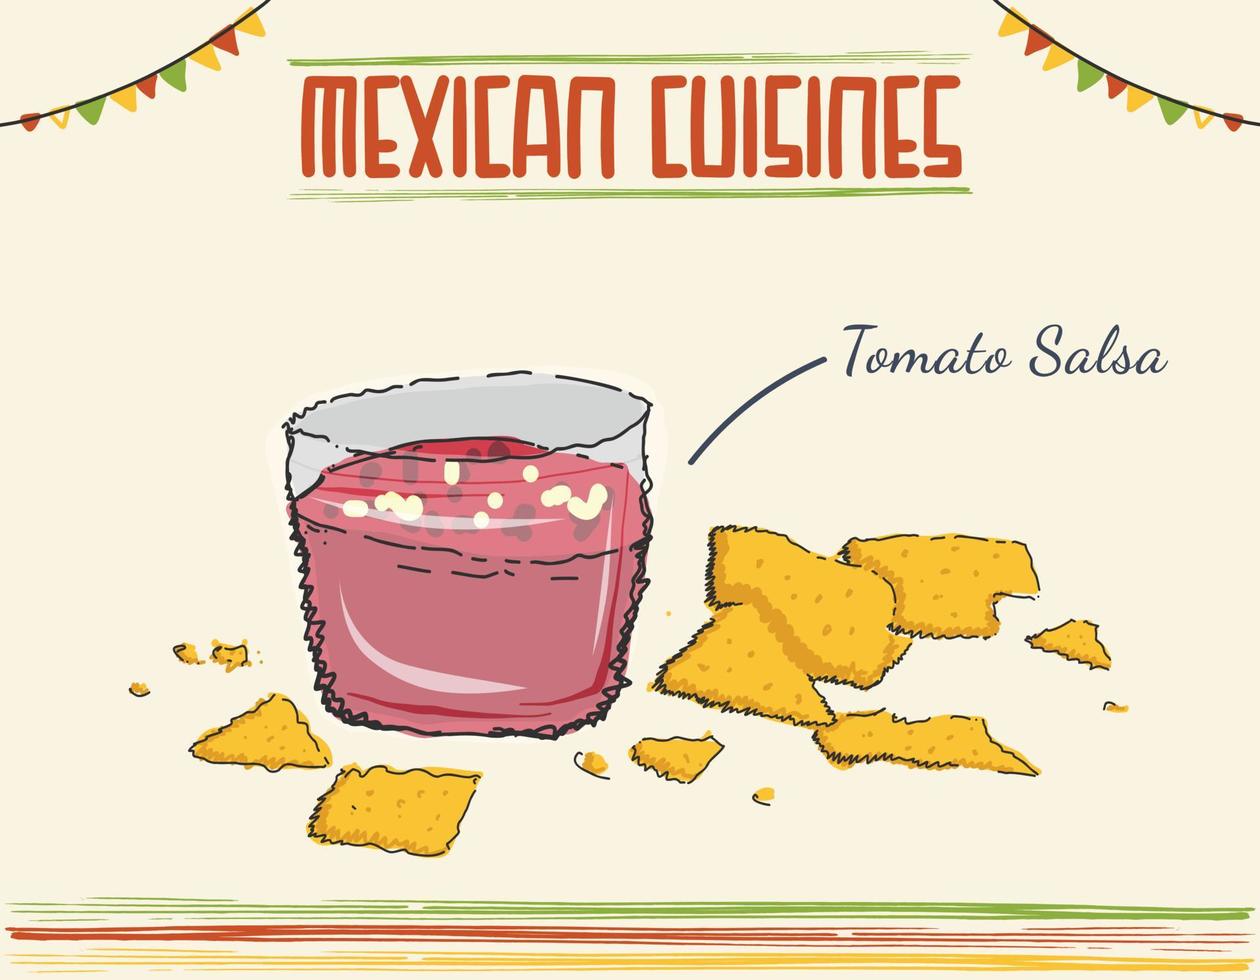 salsa traditionele mexicaanse saus met nacho's. Mexicaanse tomatensalsasaus met nacho's vectorillustratie. minimale gekleurde geïsoleerde vectorillustratie vector